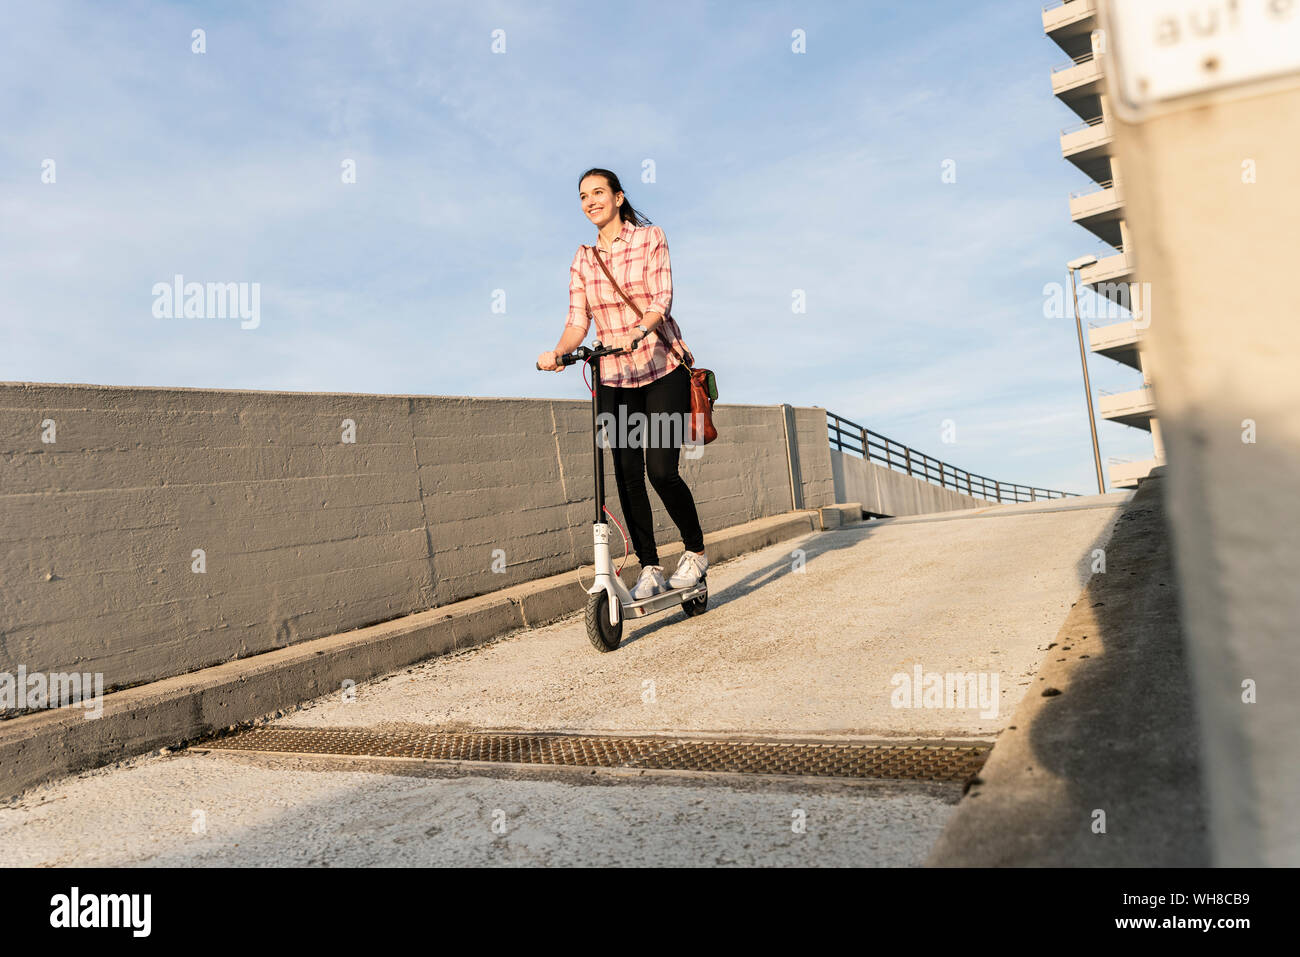 Young woman riding scooter électrique sur le pont-garage Banque D'Images